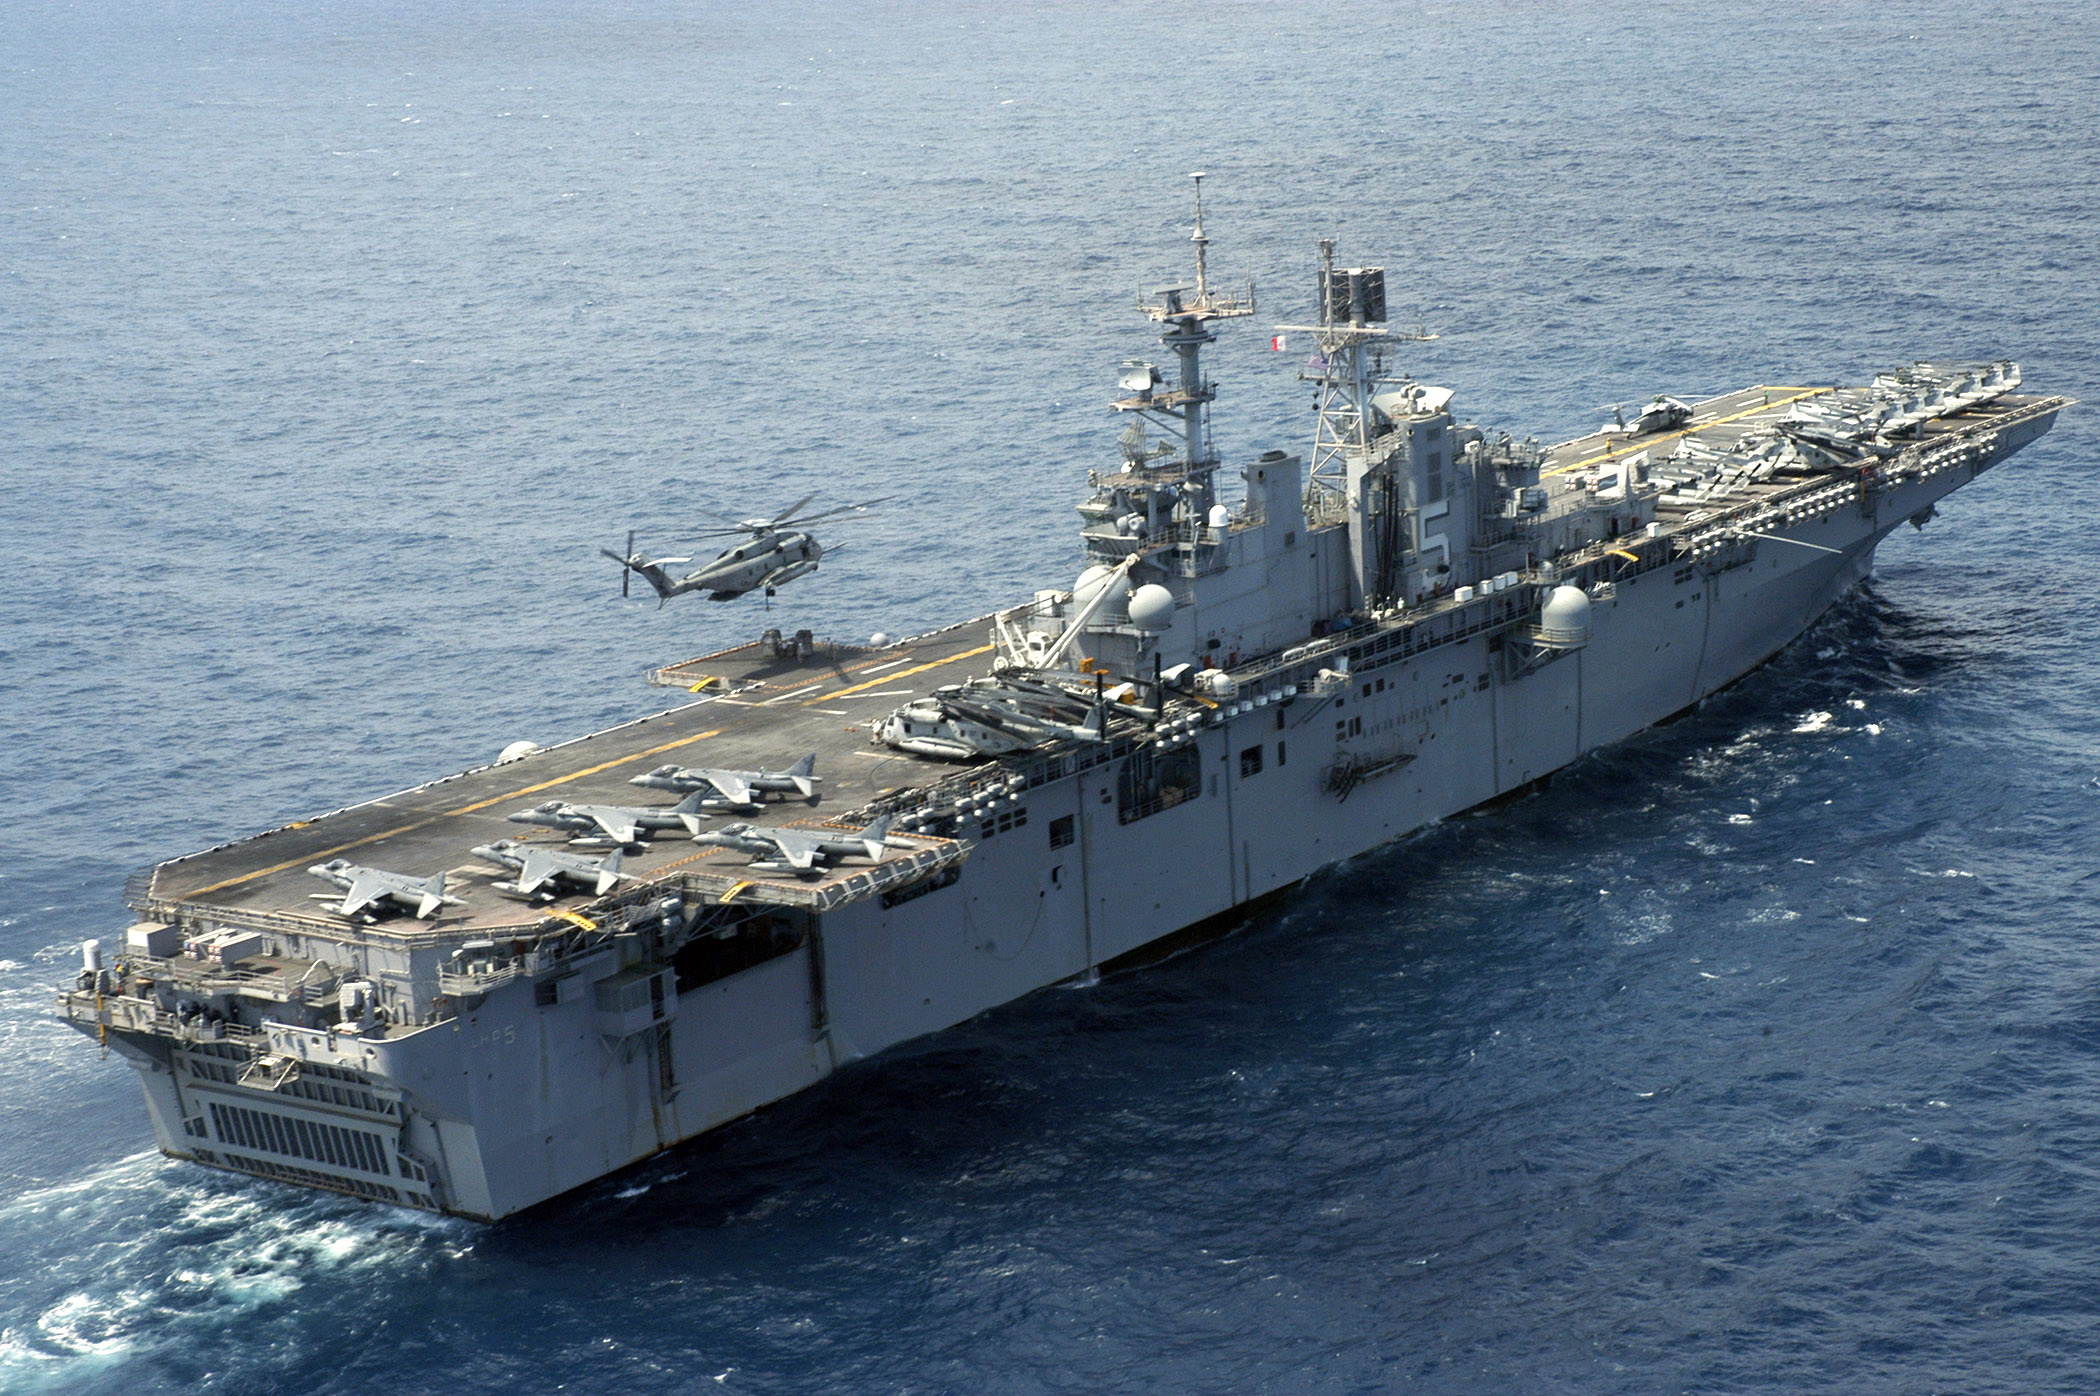 Stany Zjednoczone przenoszą USS Bataan, wszechstronny amfibijny okręt szturmowy przewożący Marines, na Morze Śródziemne